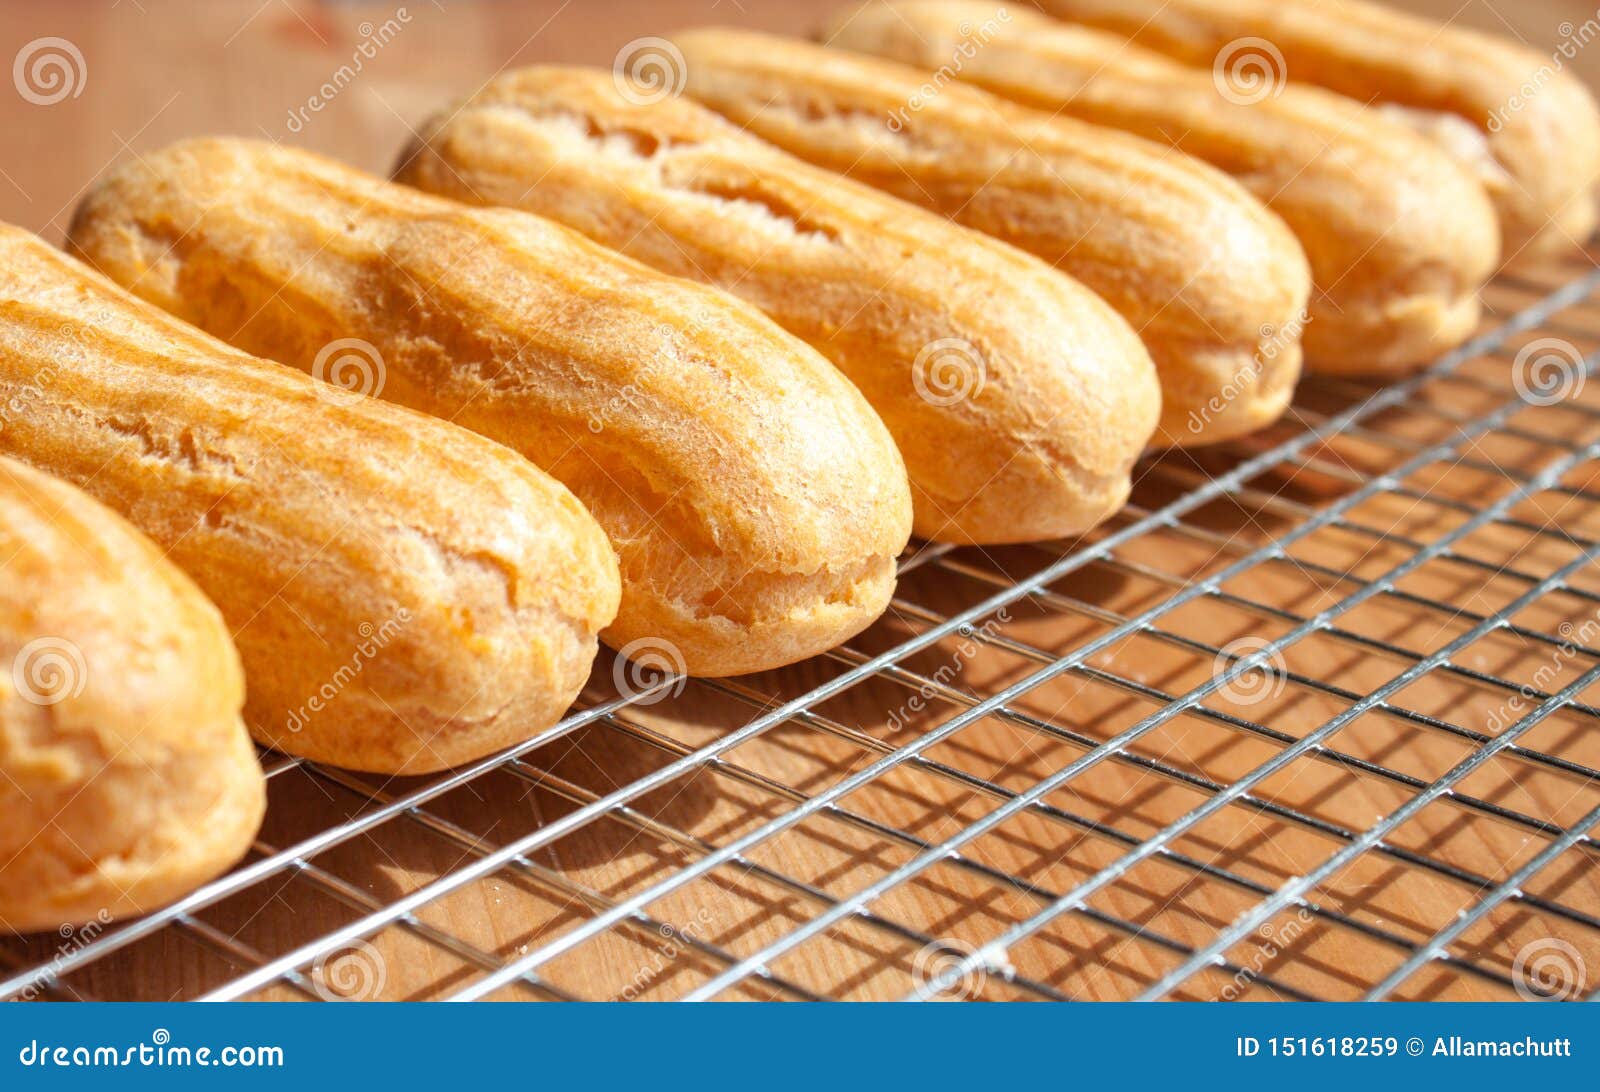 Как испечь заварное пирожное дома: Заварные пирожные — пошаговый рецепт в домашних условиях на Webspoon.ru